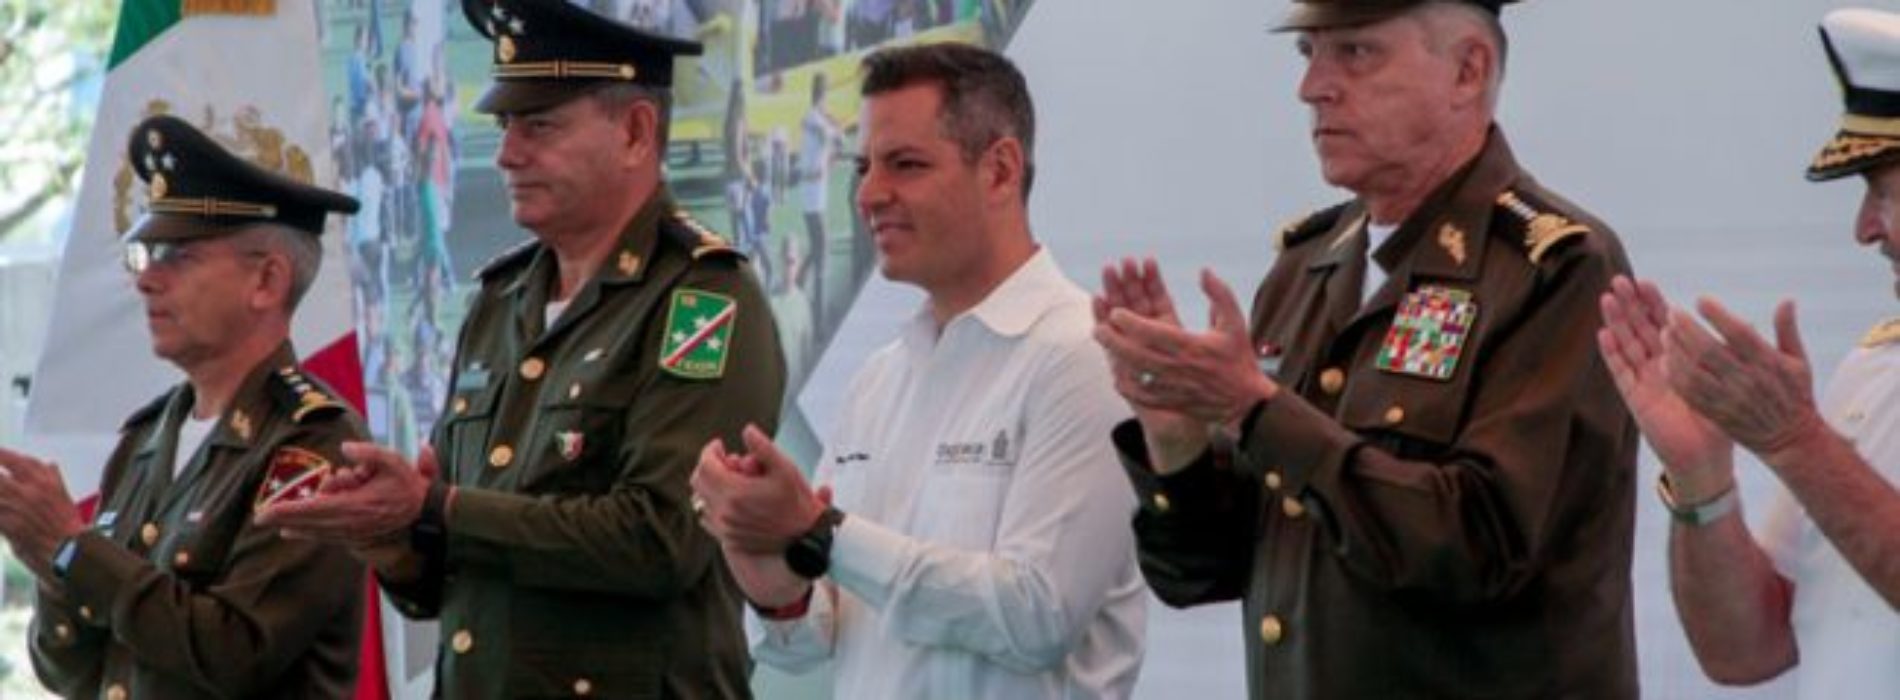 Comienza actividades en Oaxaca la Exposición “Fuerzas
Armadas…Pasión por servir a México”